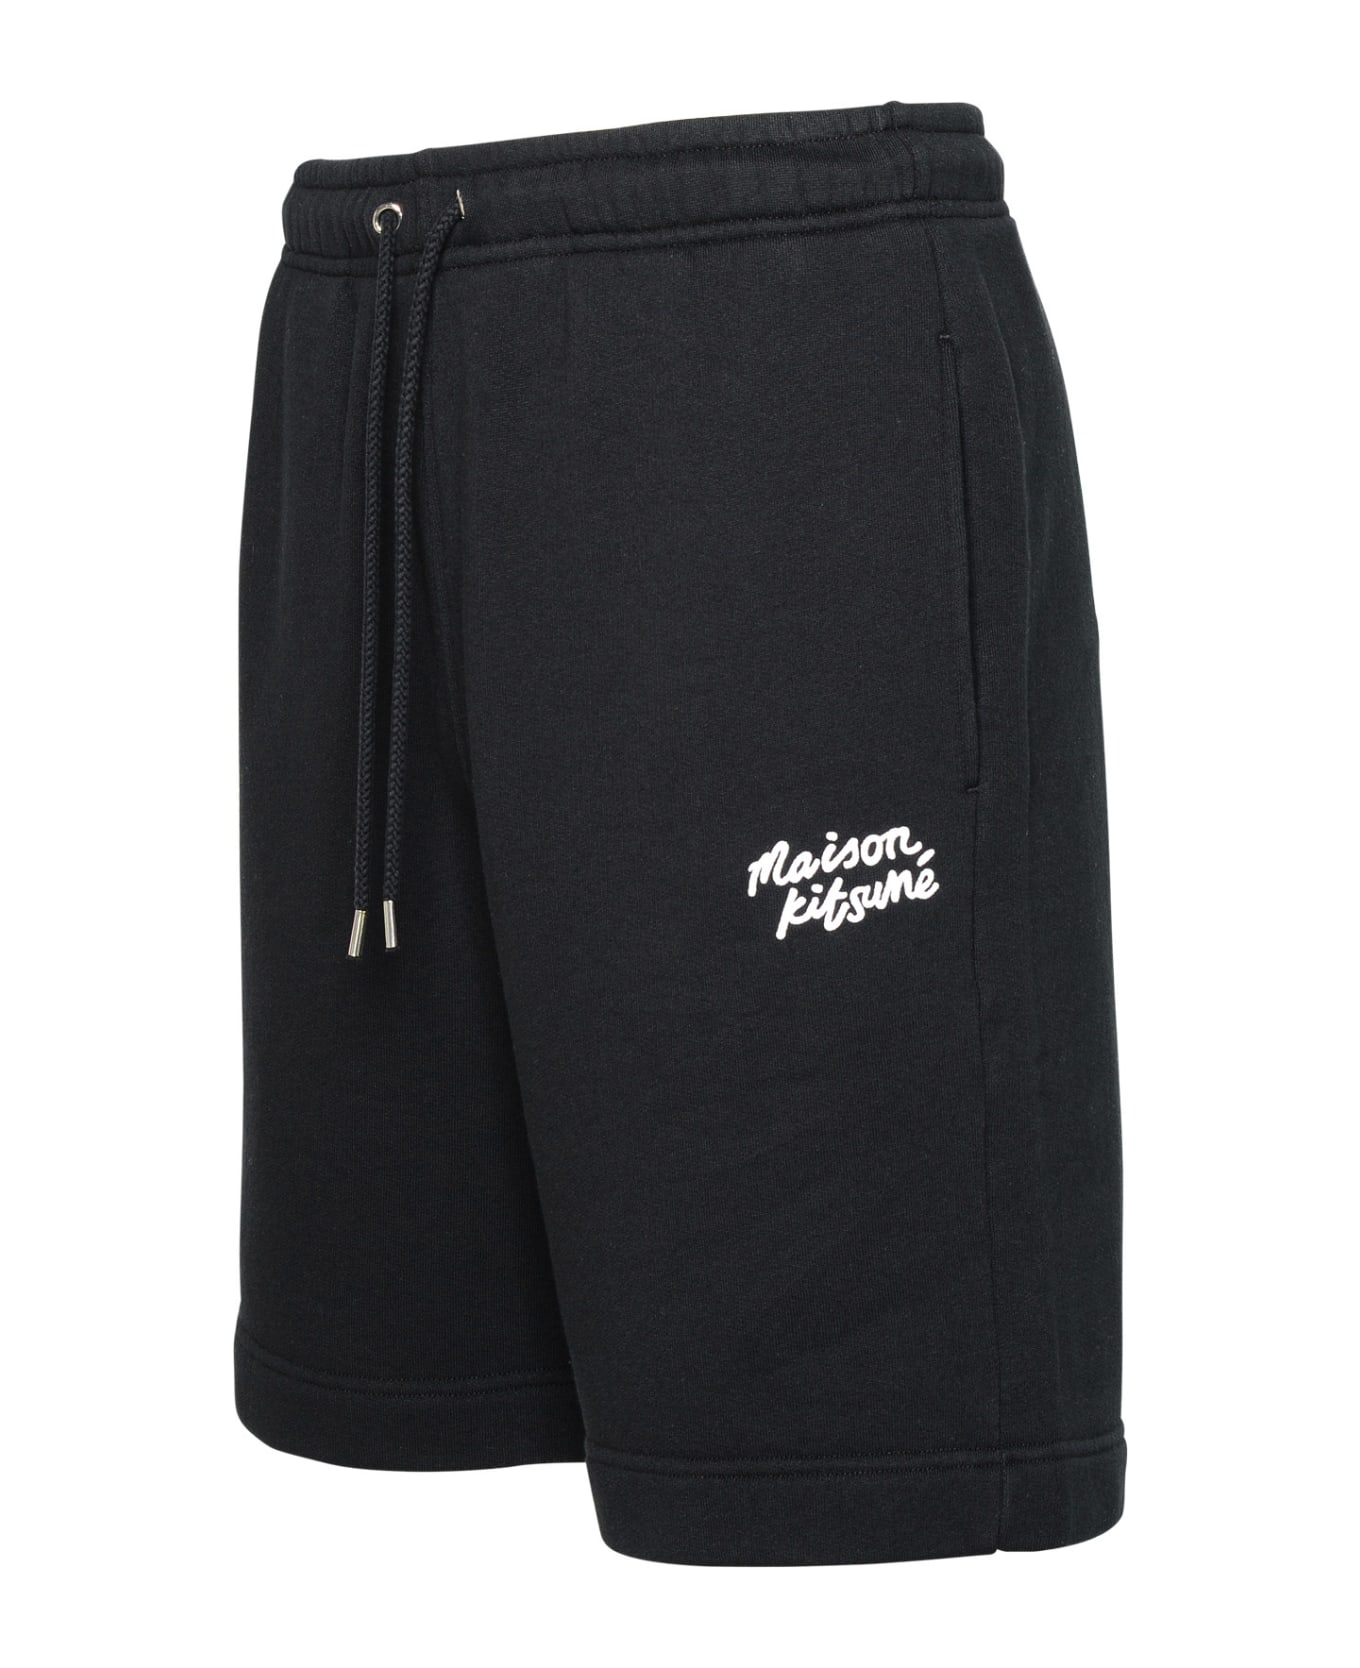 Maison Kitsuné Black Cotton Bermuda Shorts - Black